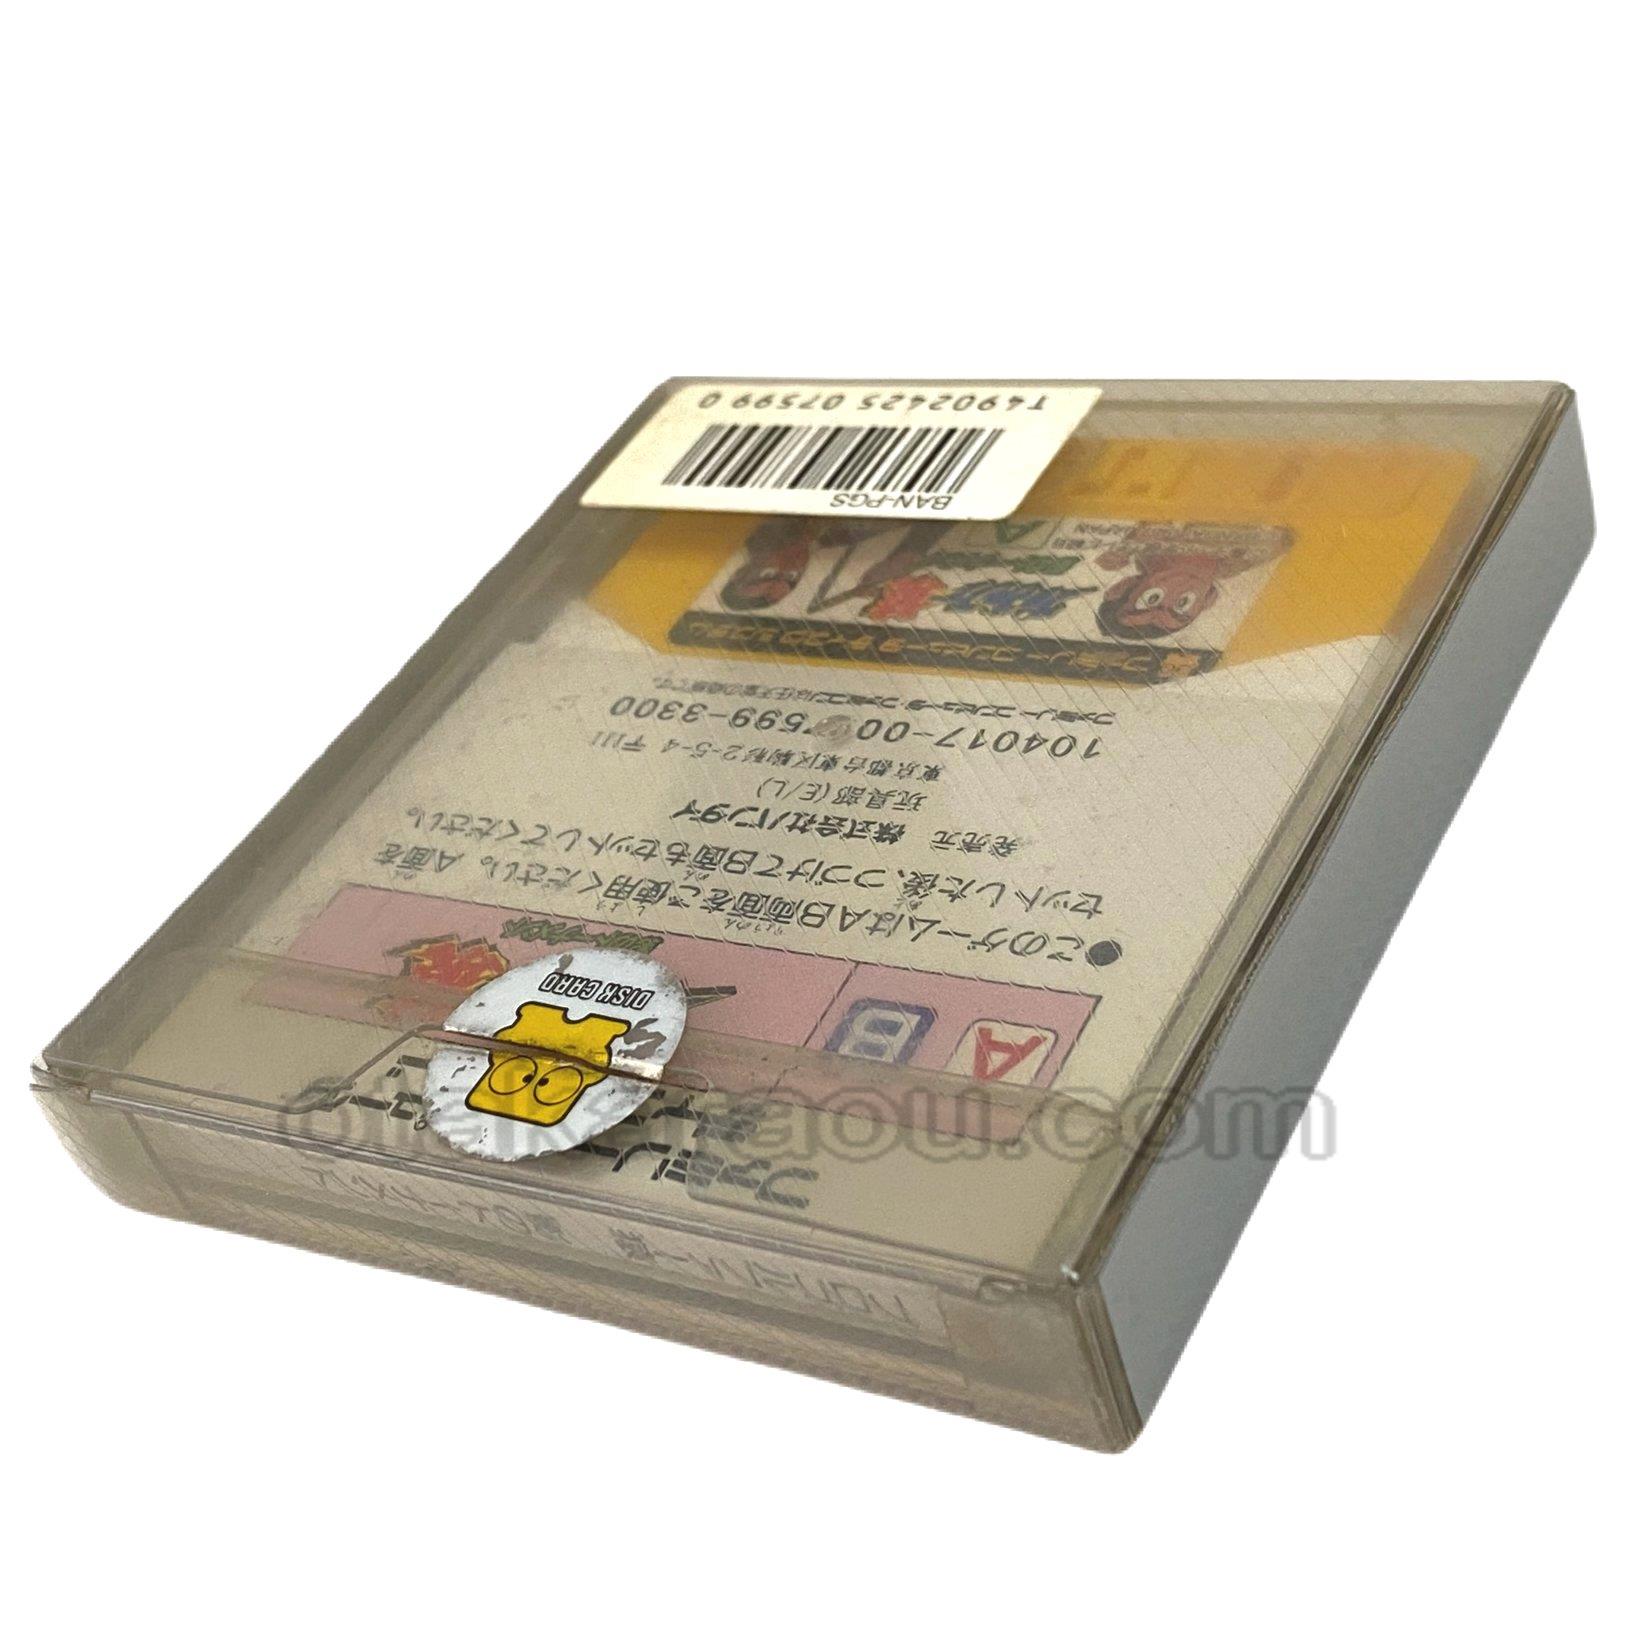 ファミコン ディスクシステムソフト プロゴルファー猿・カードを販売 